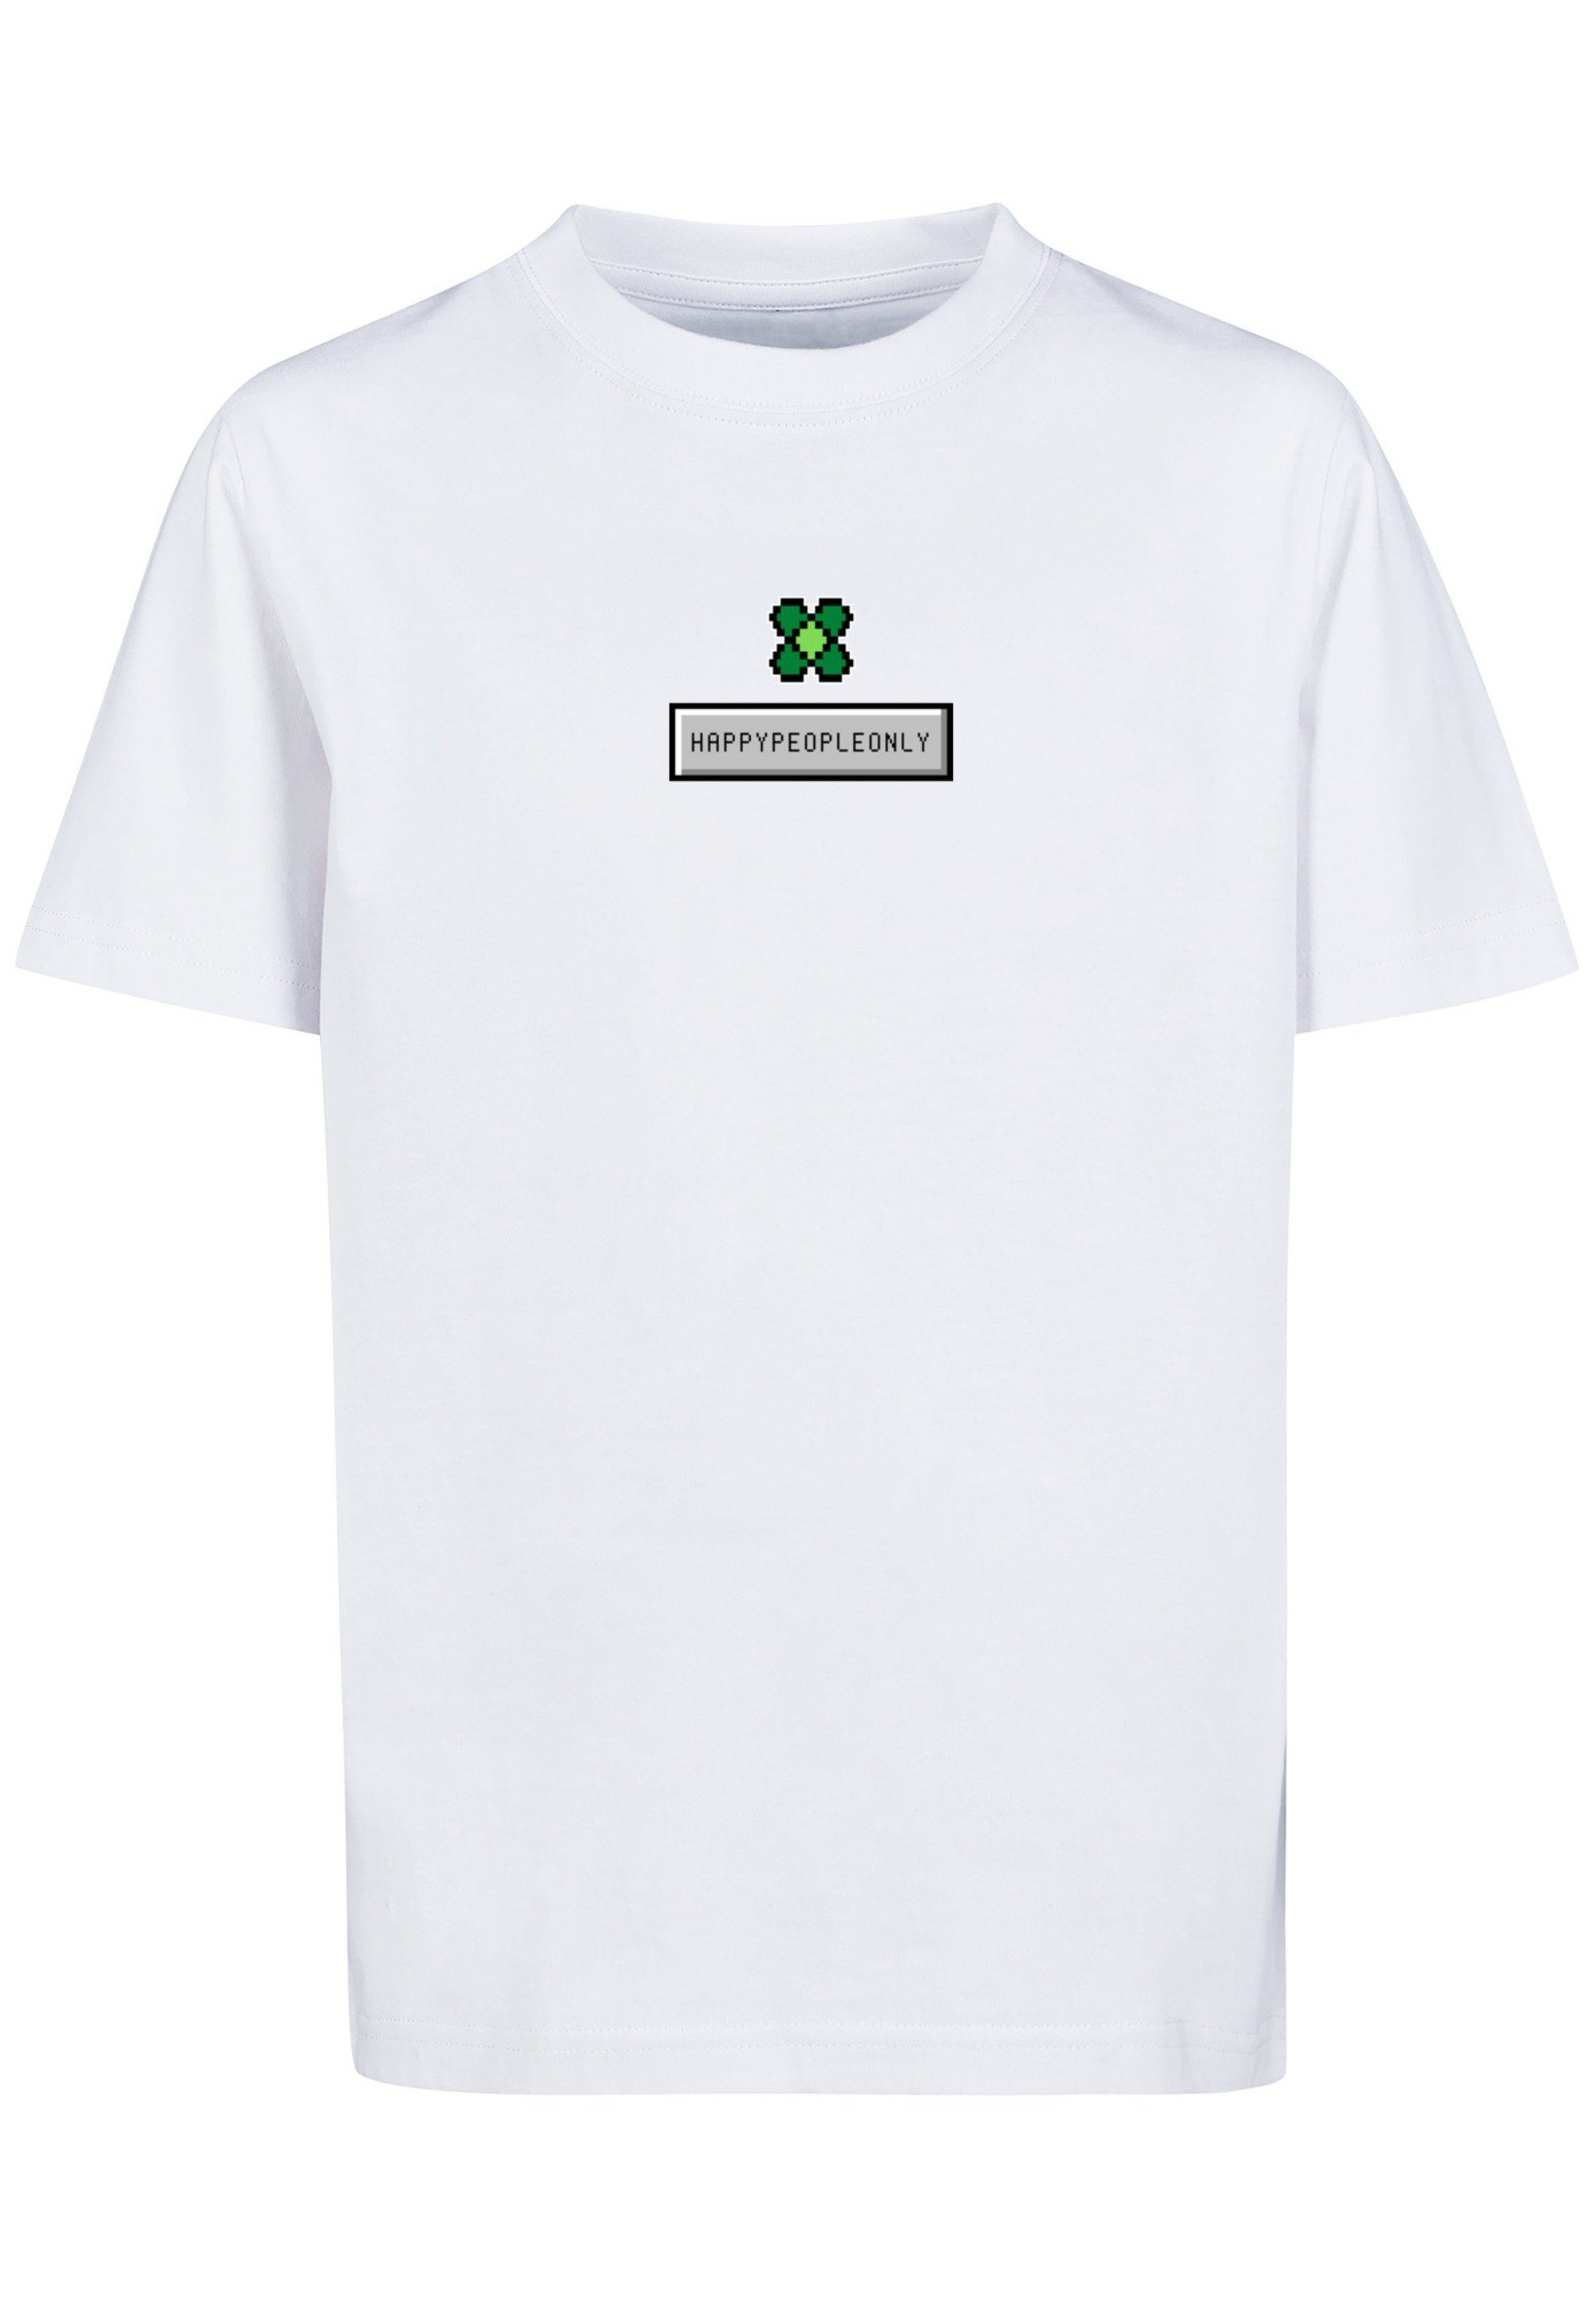 Kleeblatt Silvester Pixel New weiß Happy Print T-Shirt F4NT4STIC Year